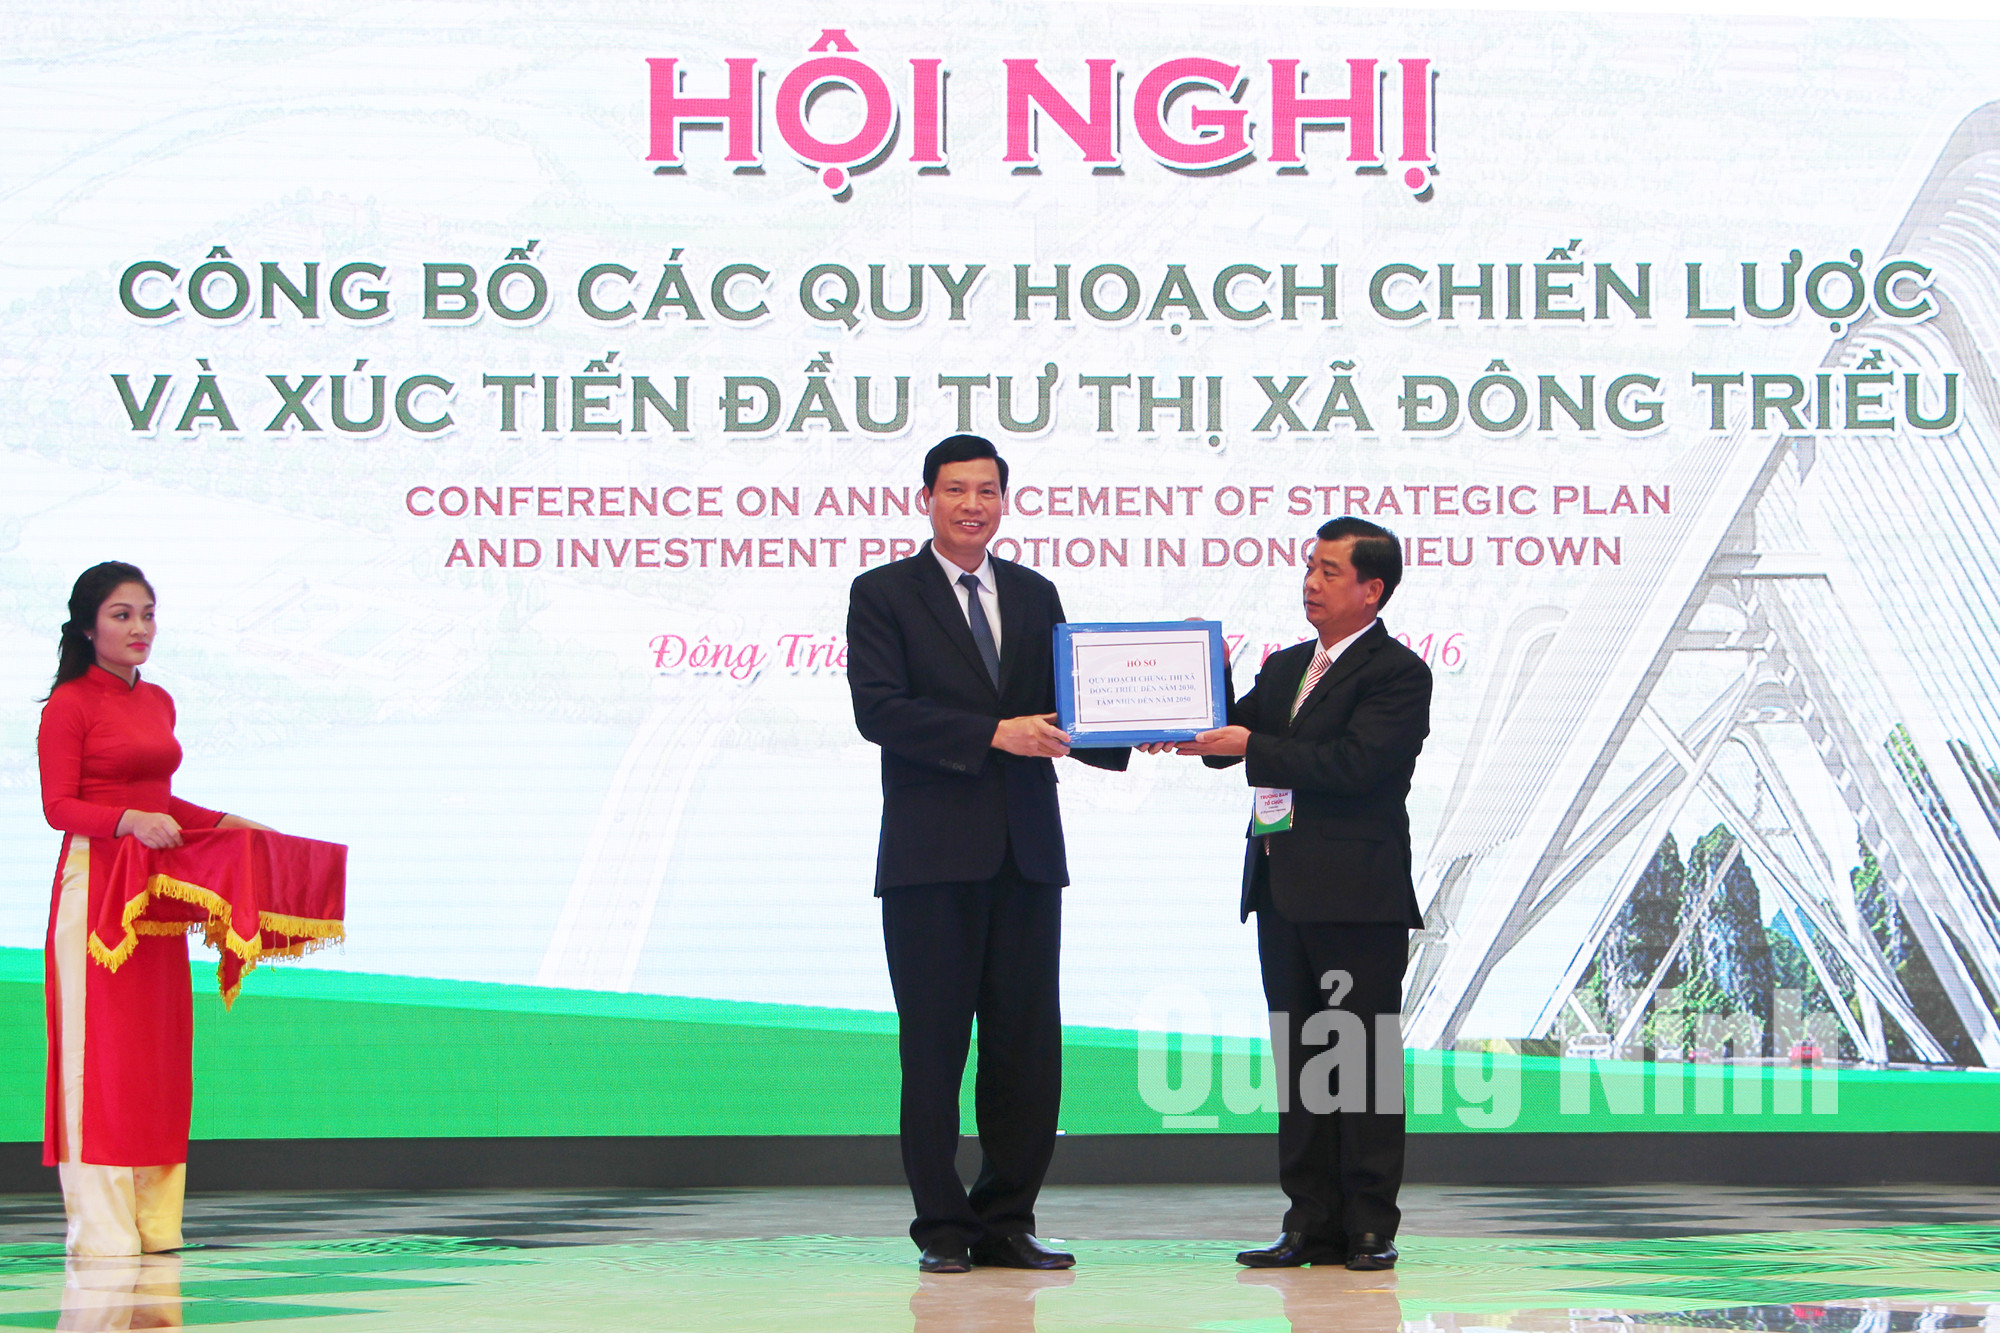 Đồng chí Nguyễn Đức Long, Chủ tịch UBND tỉnh trao Hồ sơ Quy hoạch cho đại diện lãnh đạo TX Đông Triều